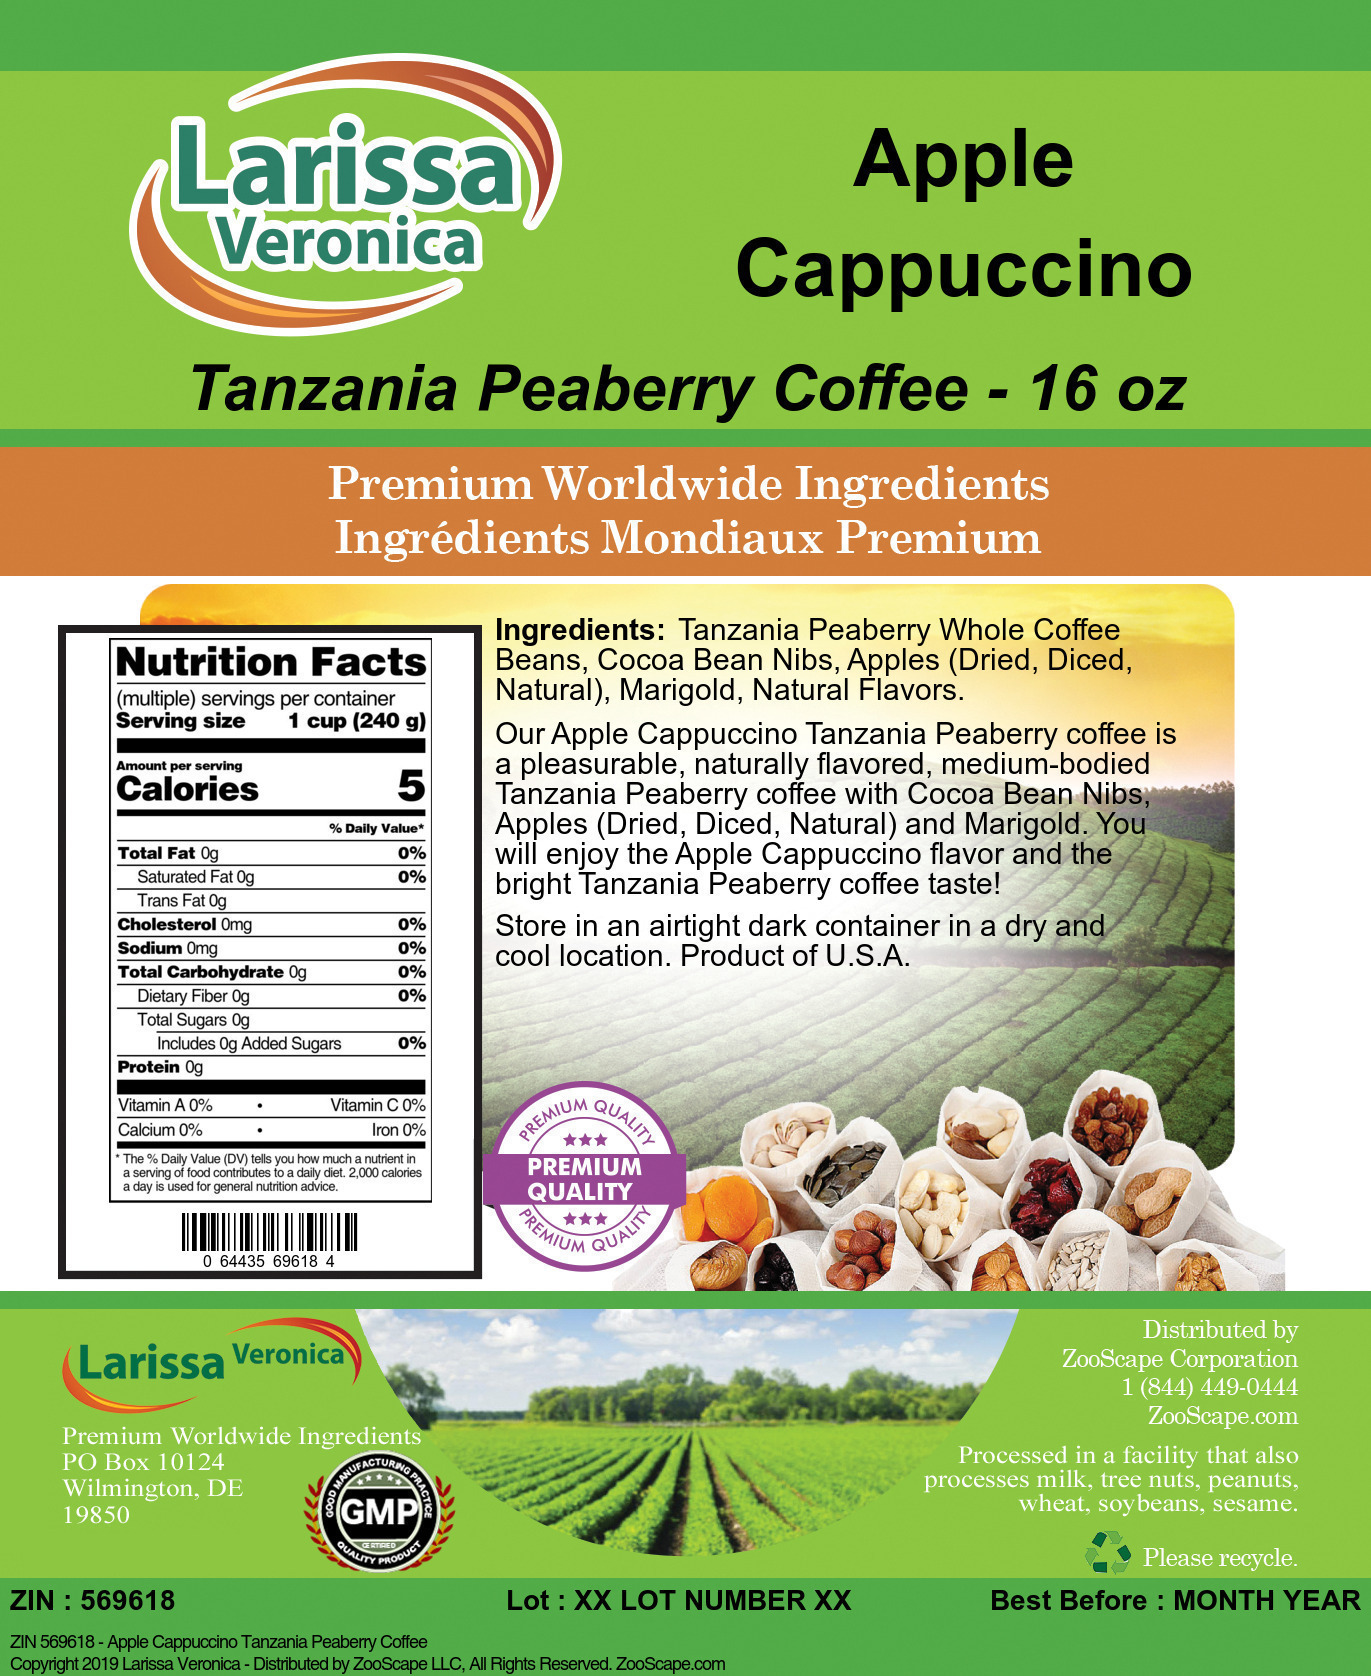 Apple Cappuccino Tanzania Peaberry Coffee - Label